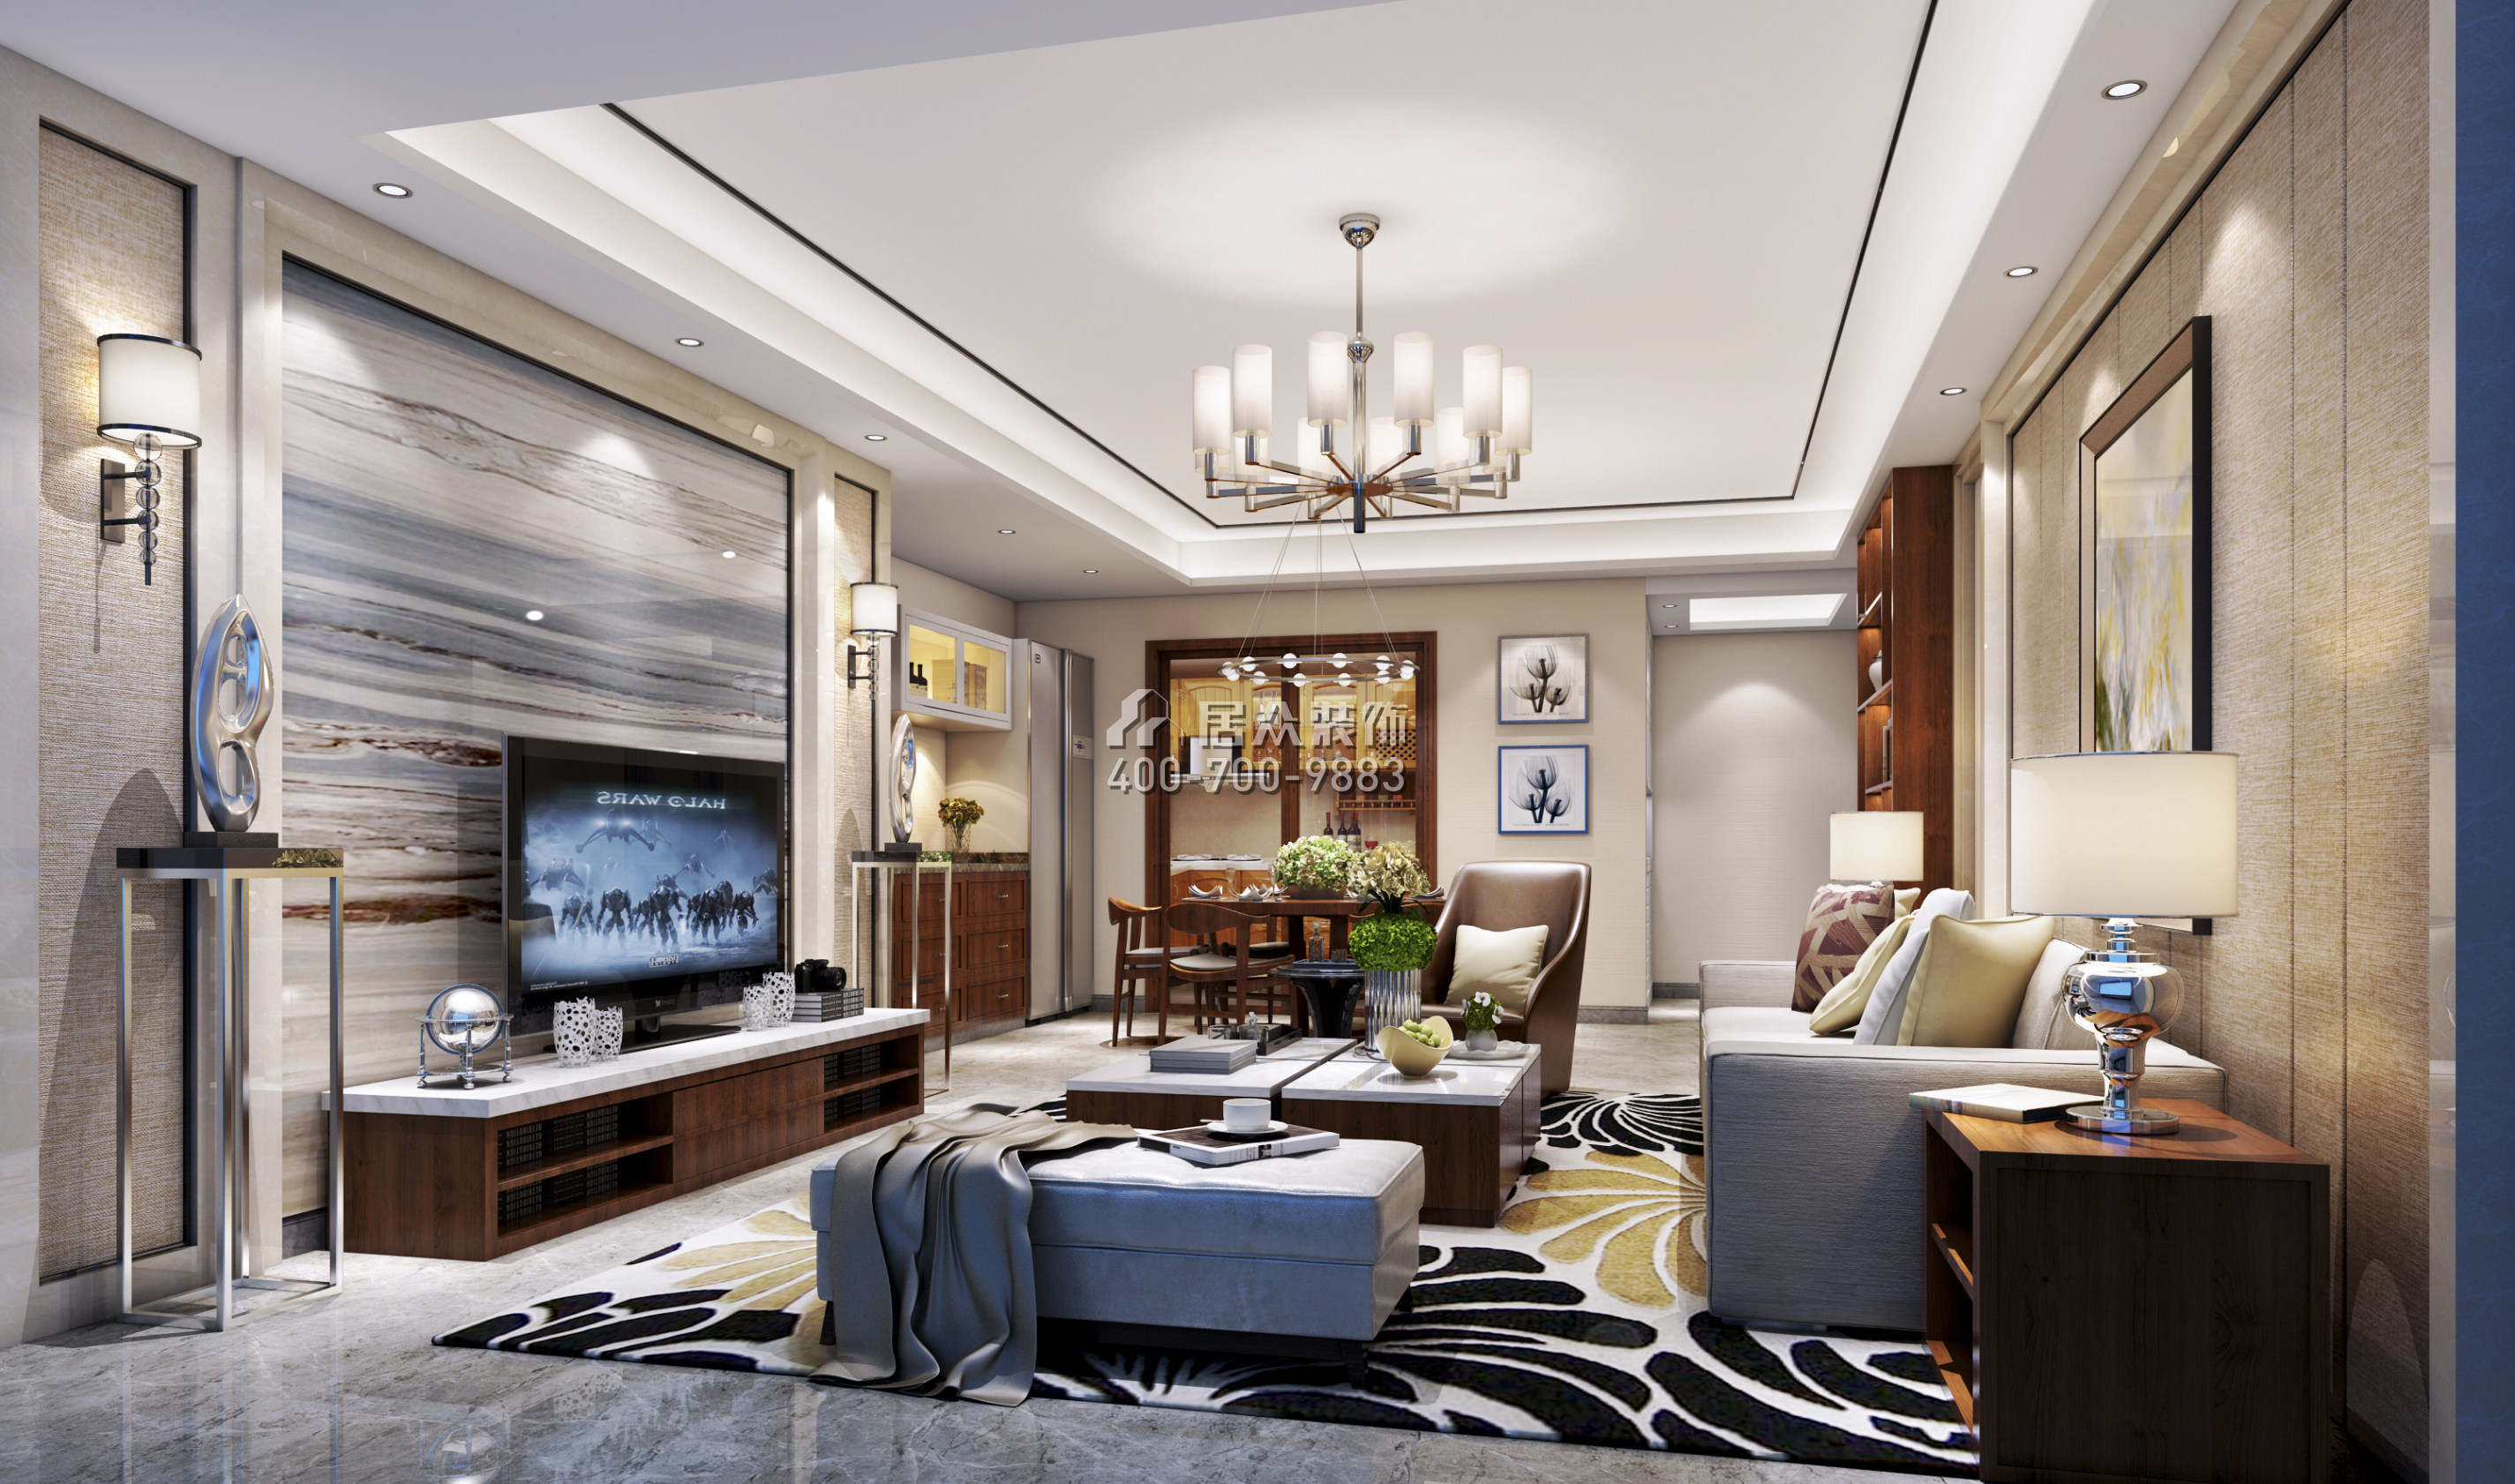 蔚蓝海岸三期120平方米中式风格平层户型客厅装修效果图